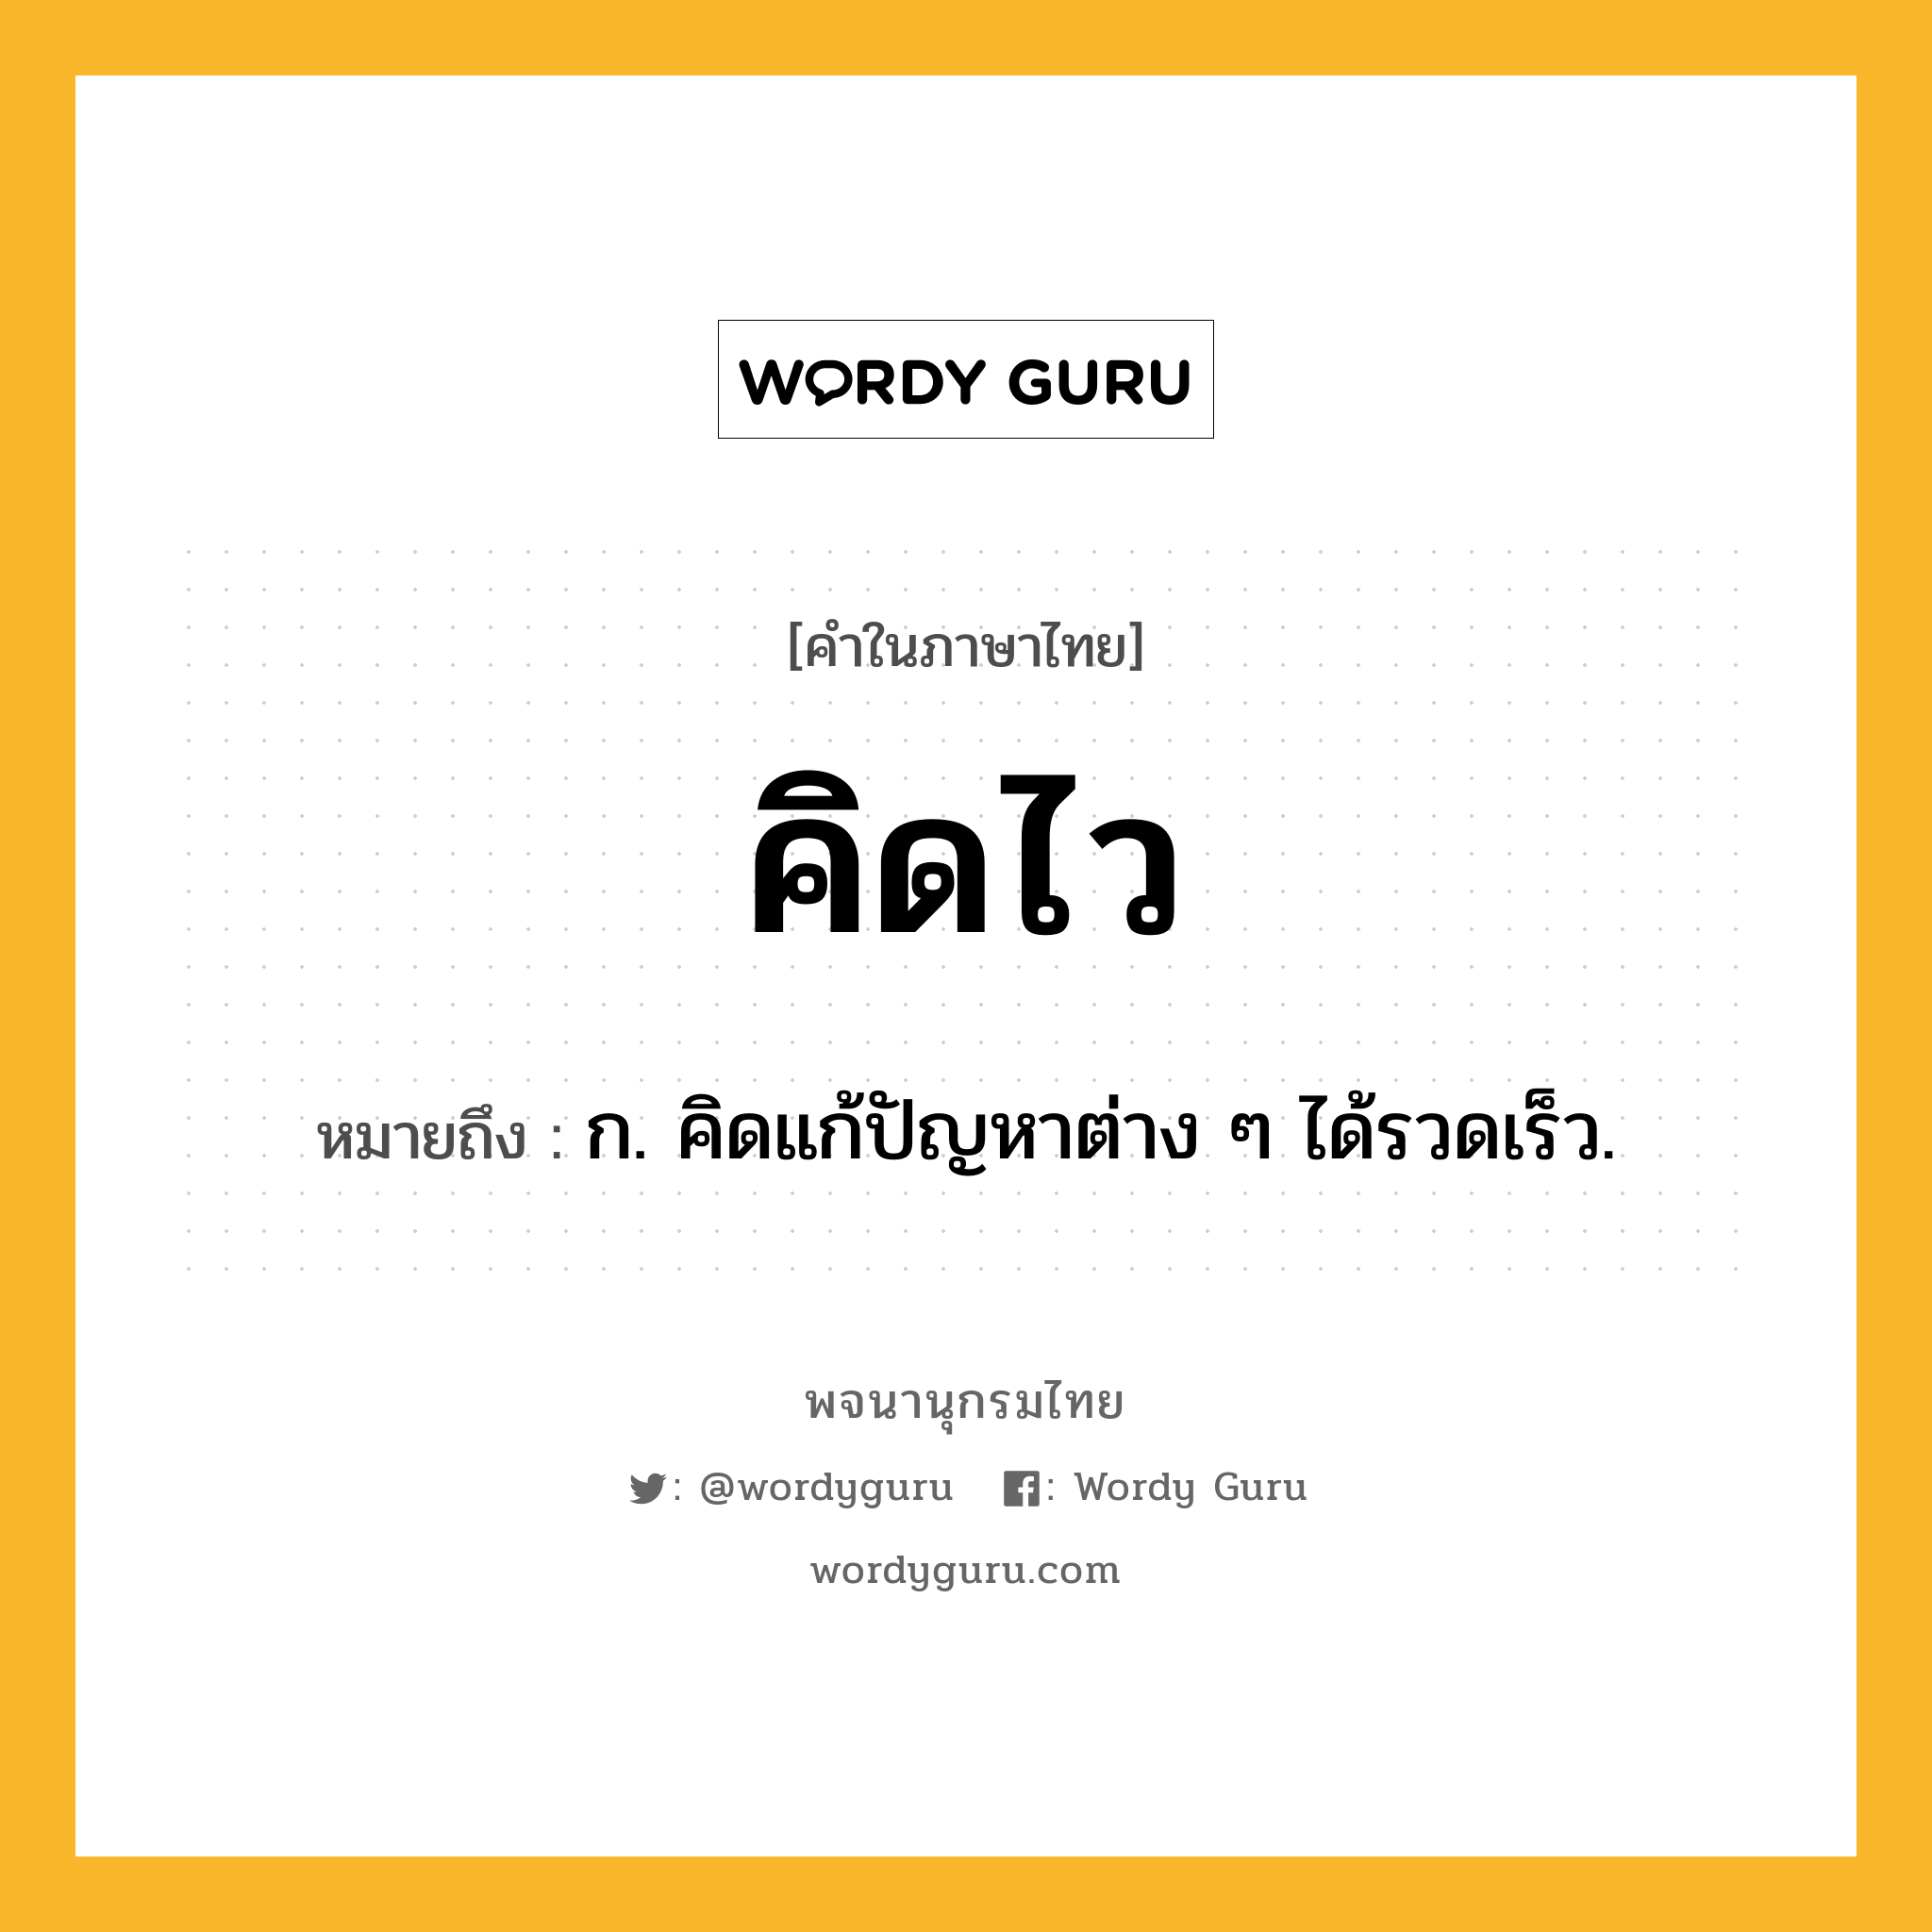 คิดไว หมายถึงอะไร?, คำในภาษาไทย คิดไว หมายถึง ก. คิดแก้ปัญหาต่าง ๆ ได้รวดเร็ว.